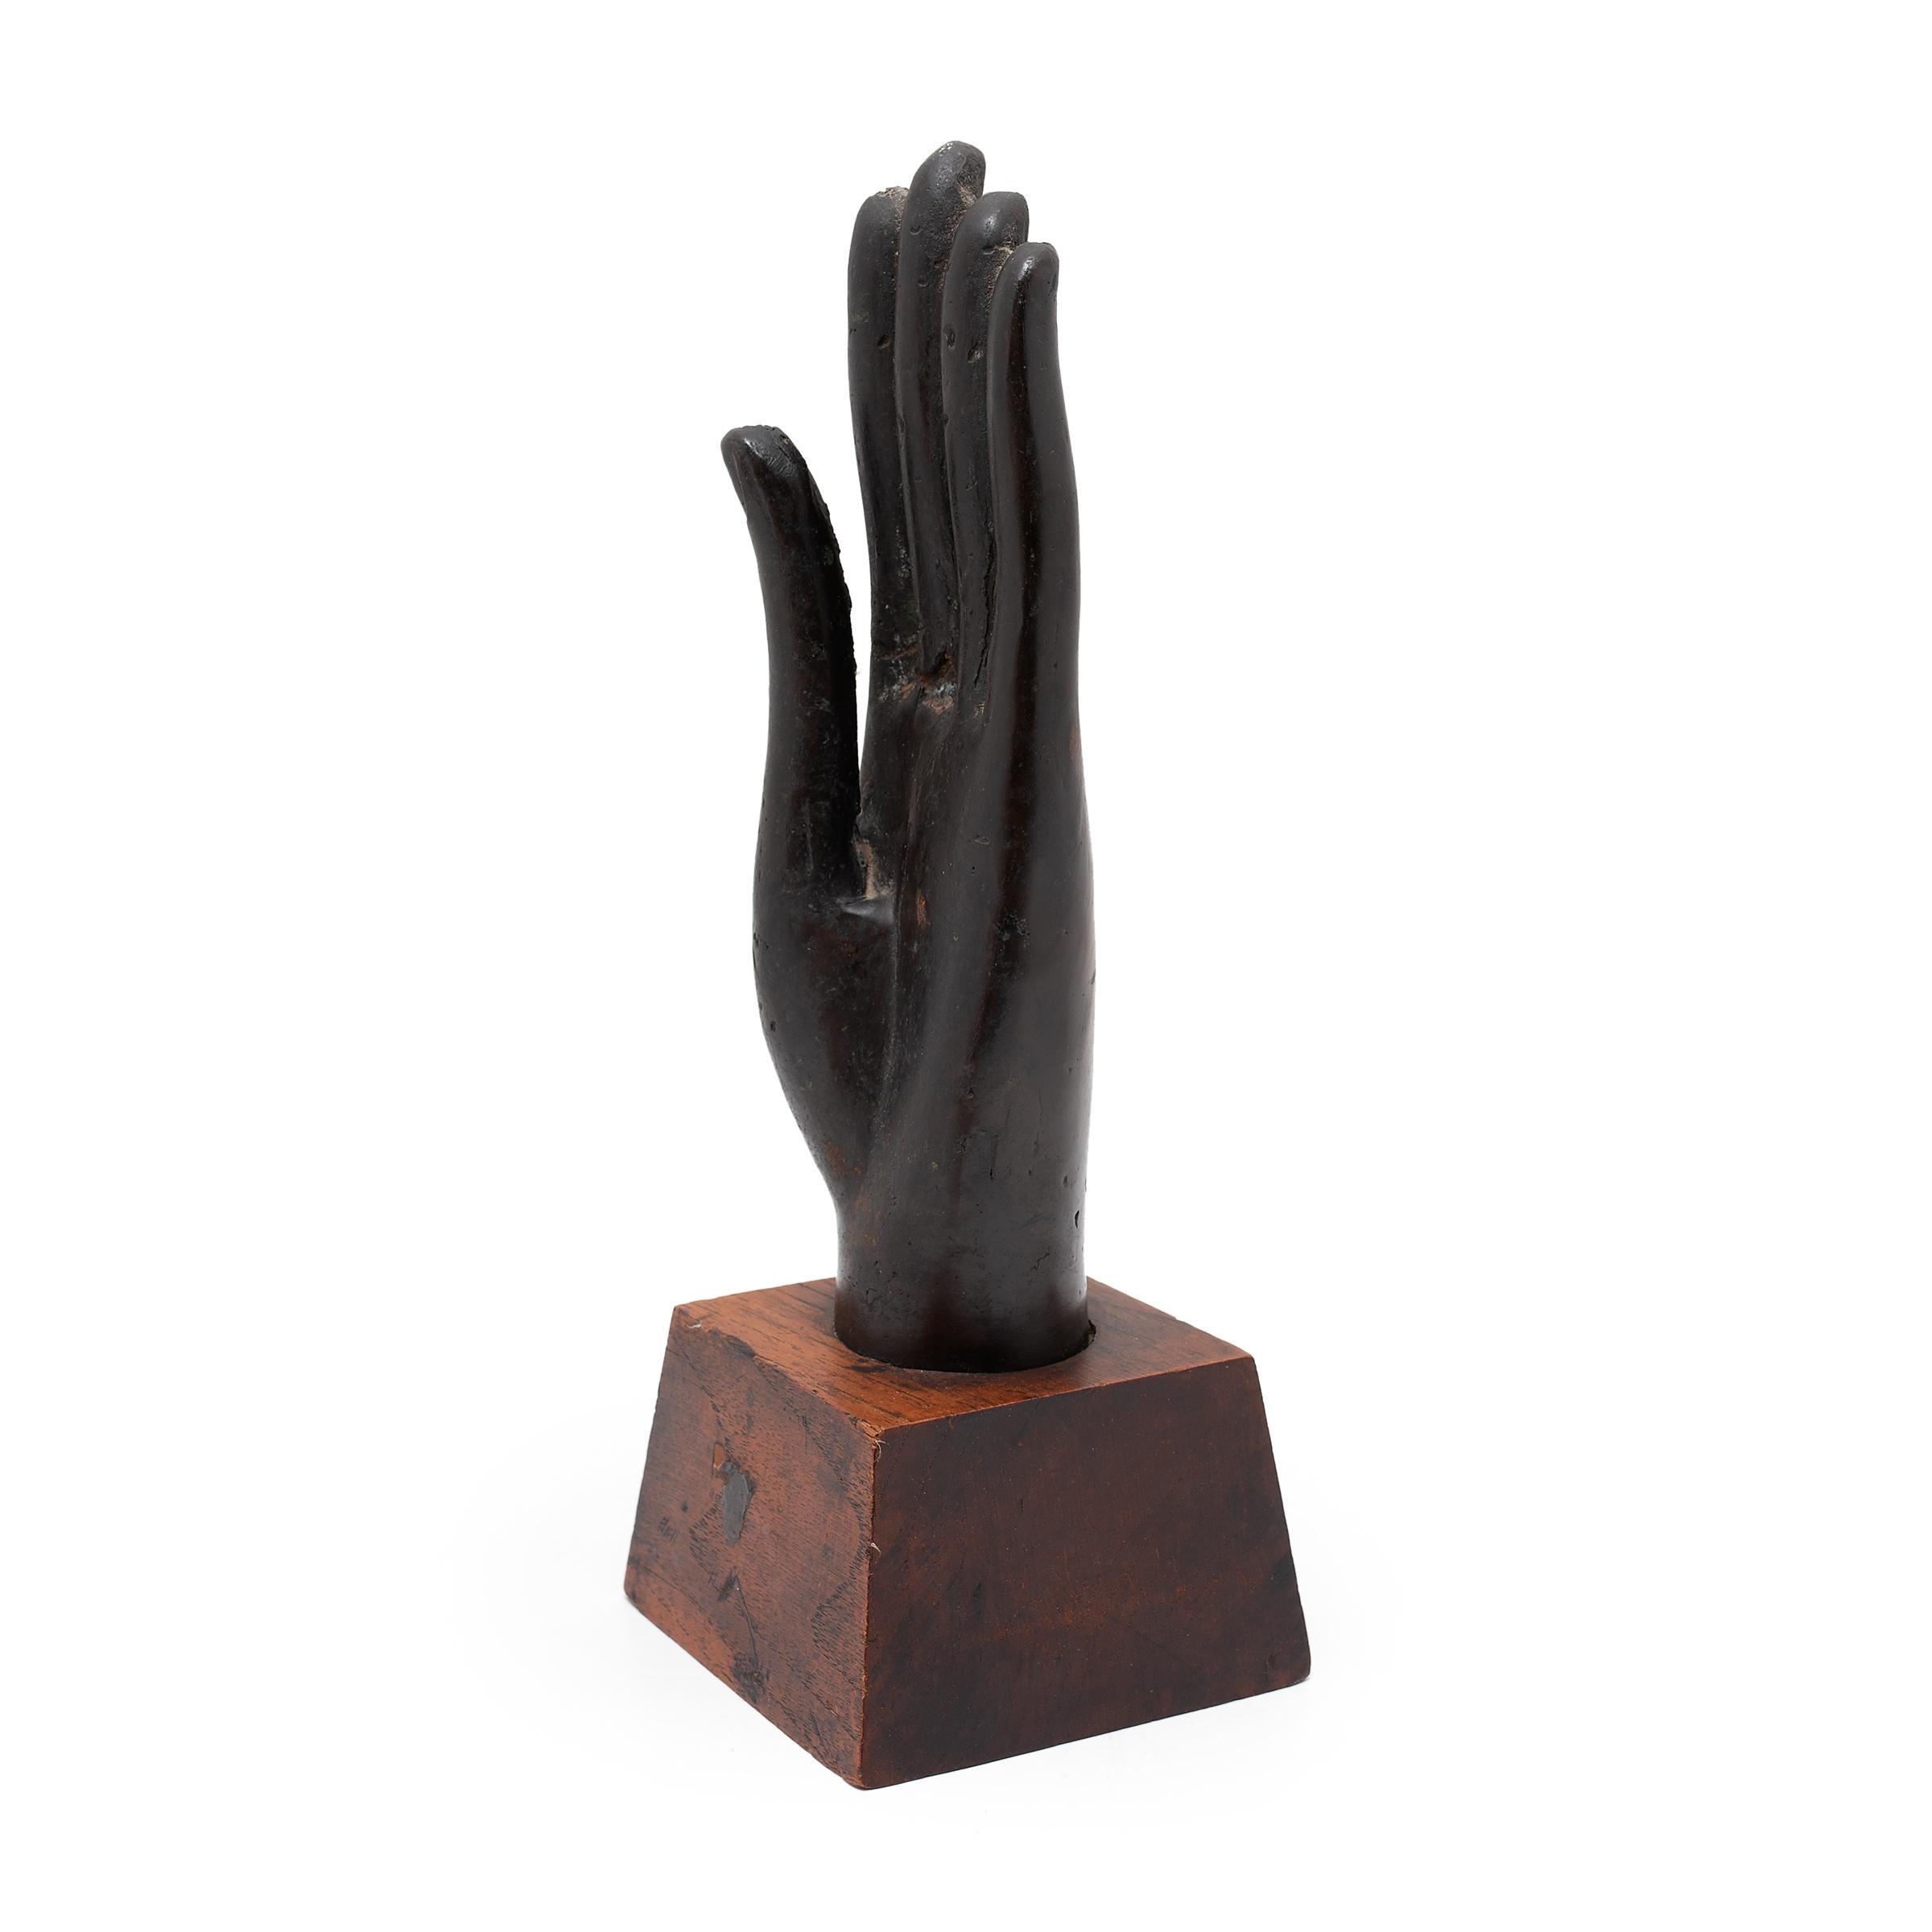 Cette sculpture thaïlandaise de la main de Bouddha, datant du XIXe siècle, est finement coulée en bronze et présente des traits réalistes ainsi qu'une belle patine sombre. La main est tenue vers le haut en Abhaya mudra, le geste de protection et de